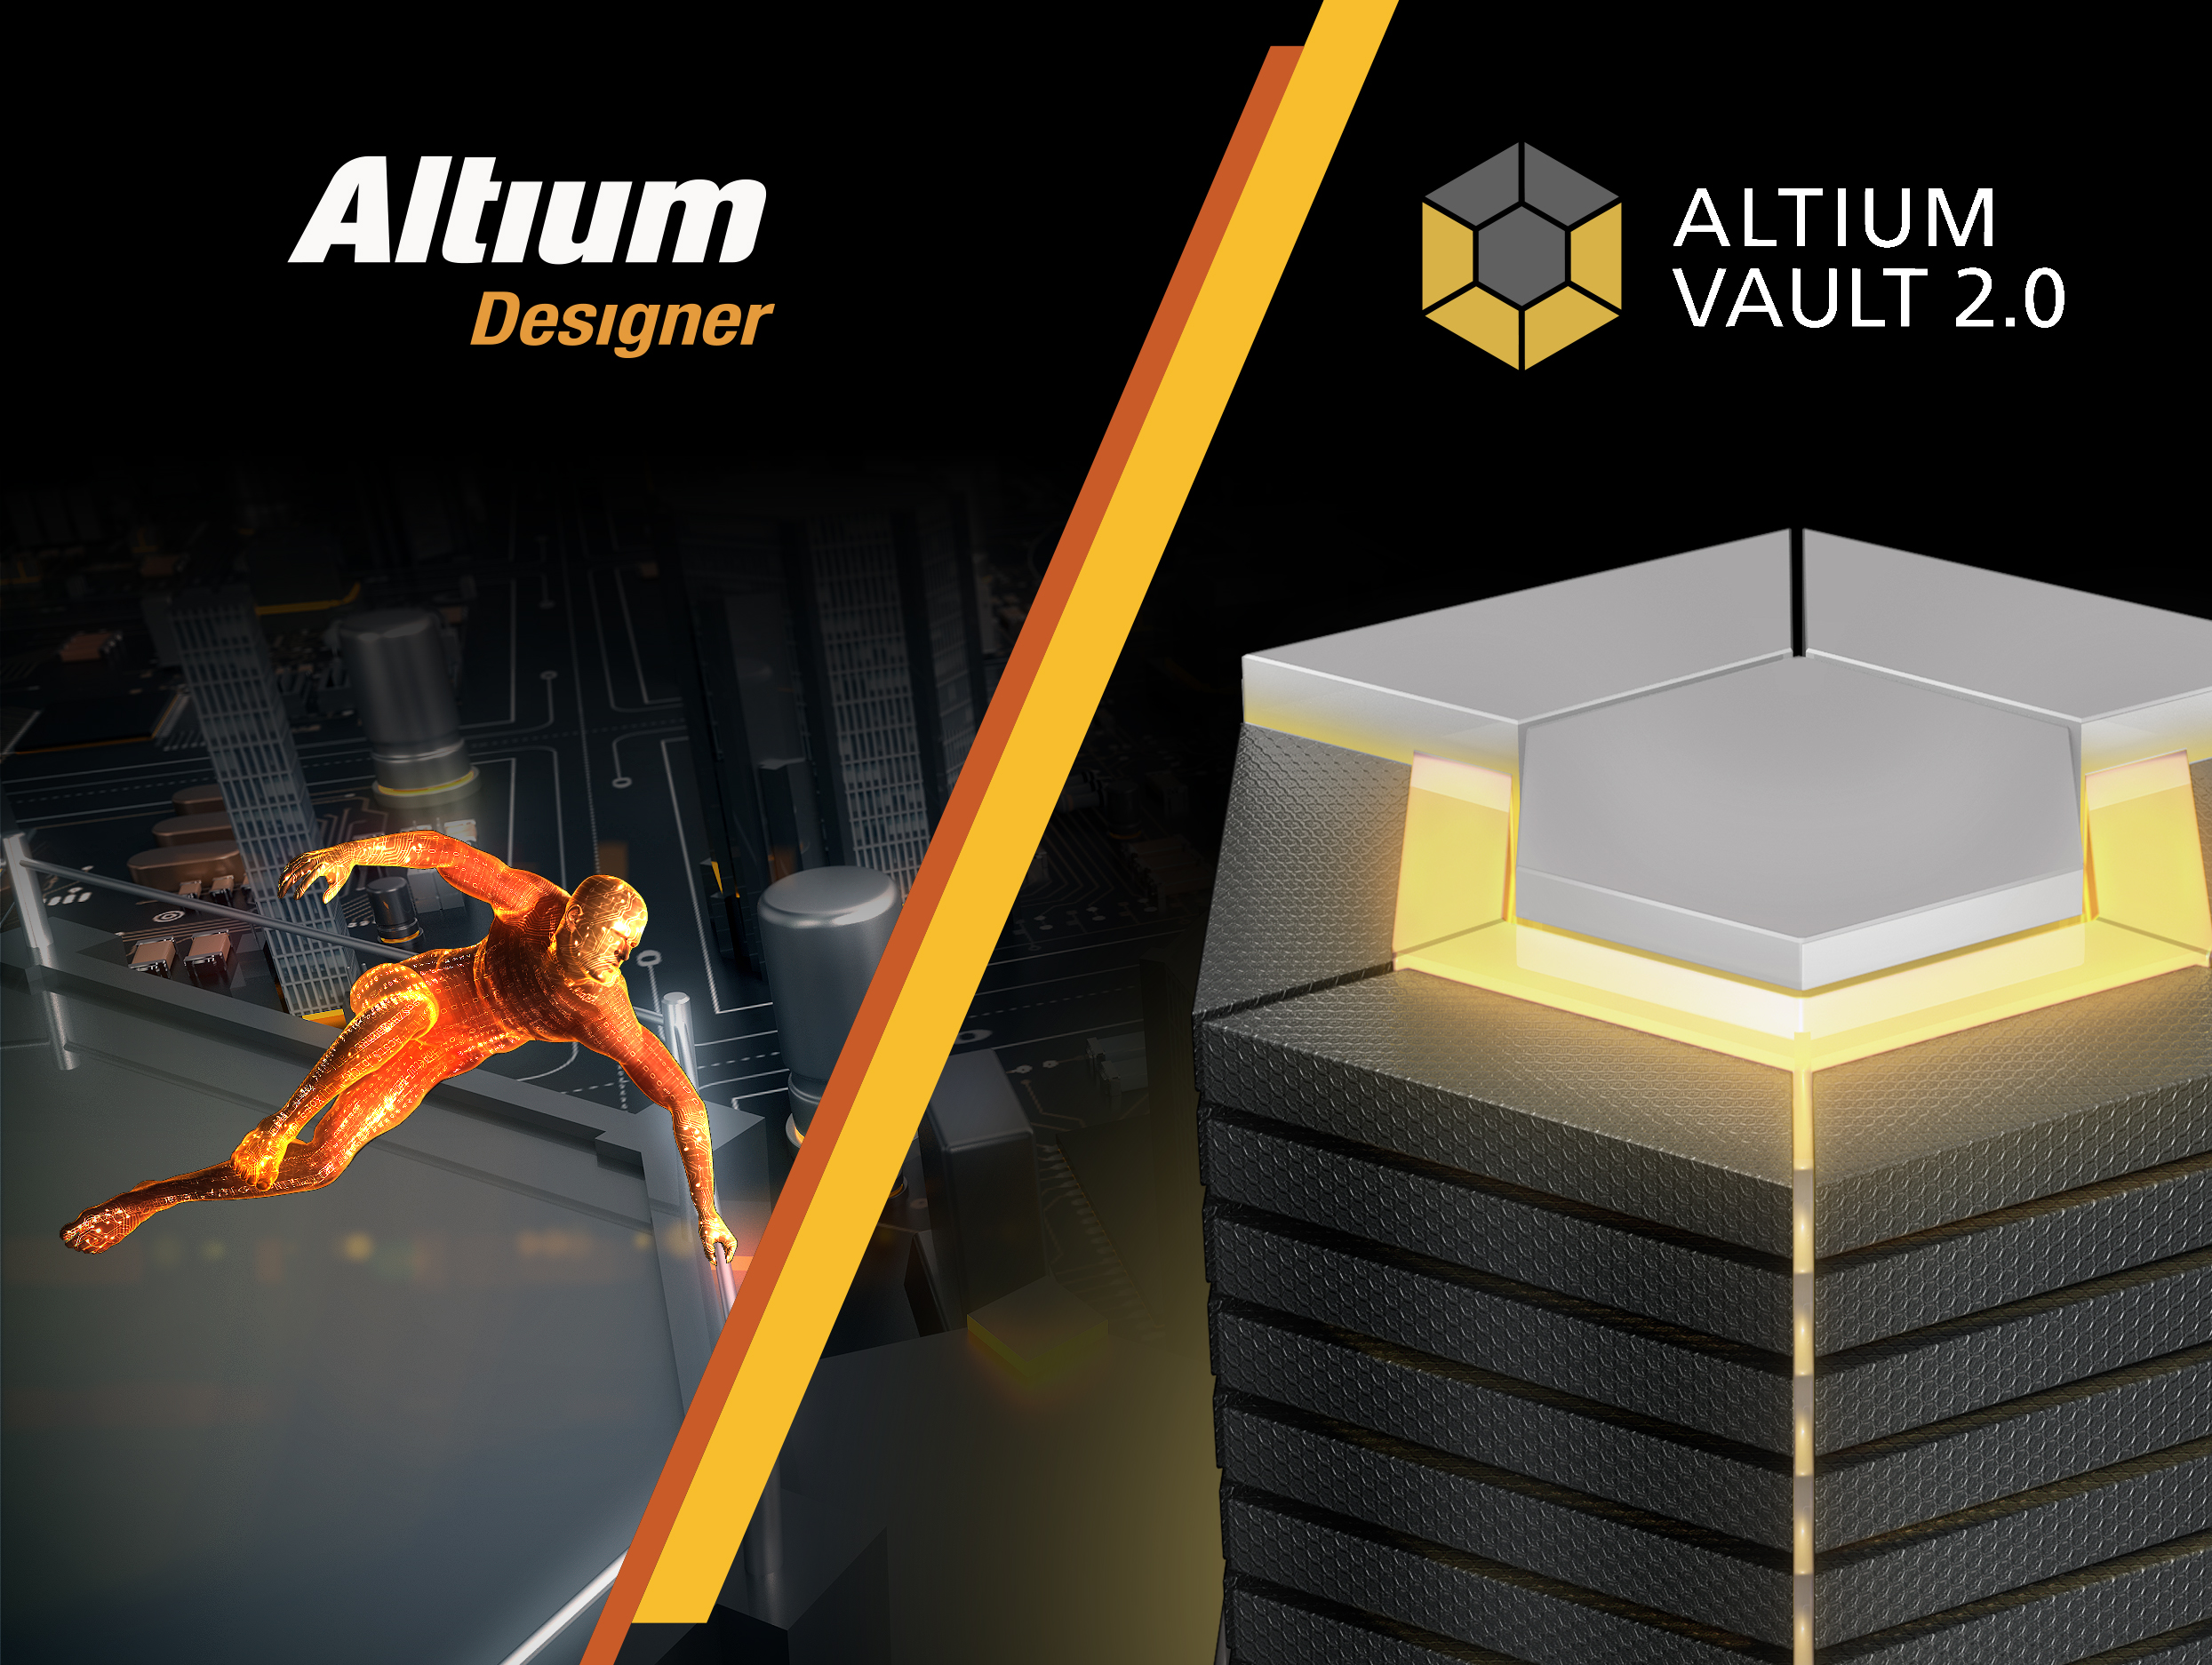 Roadshow for Altium Designer and Altium Vault at SINDEX